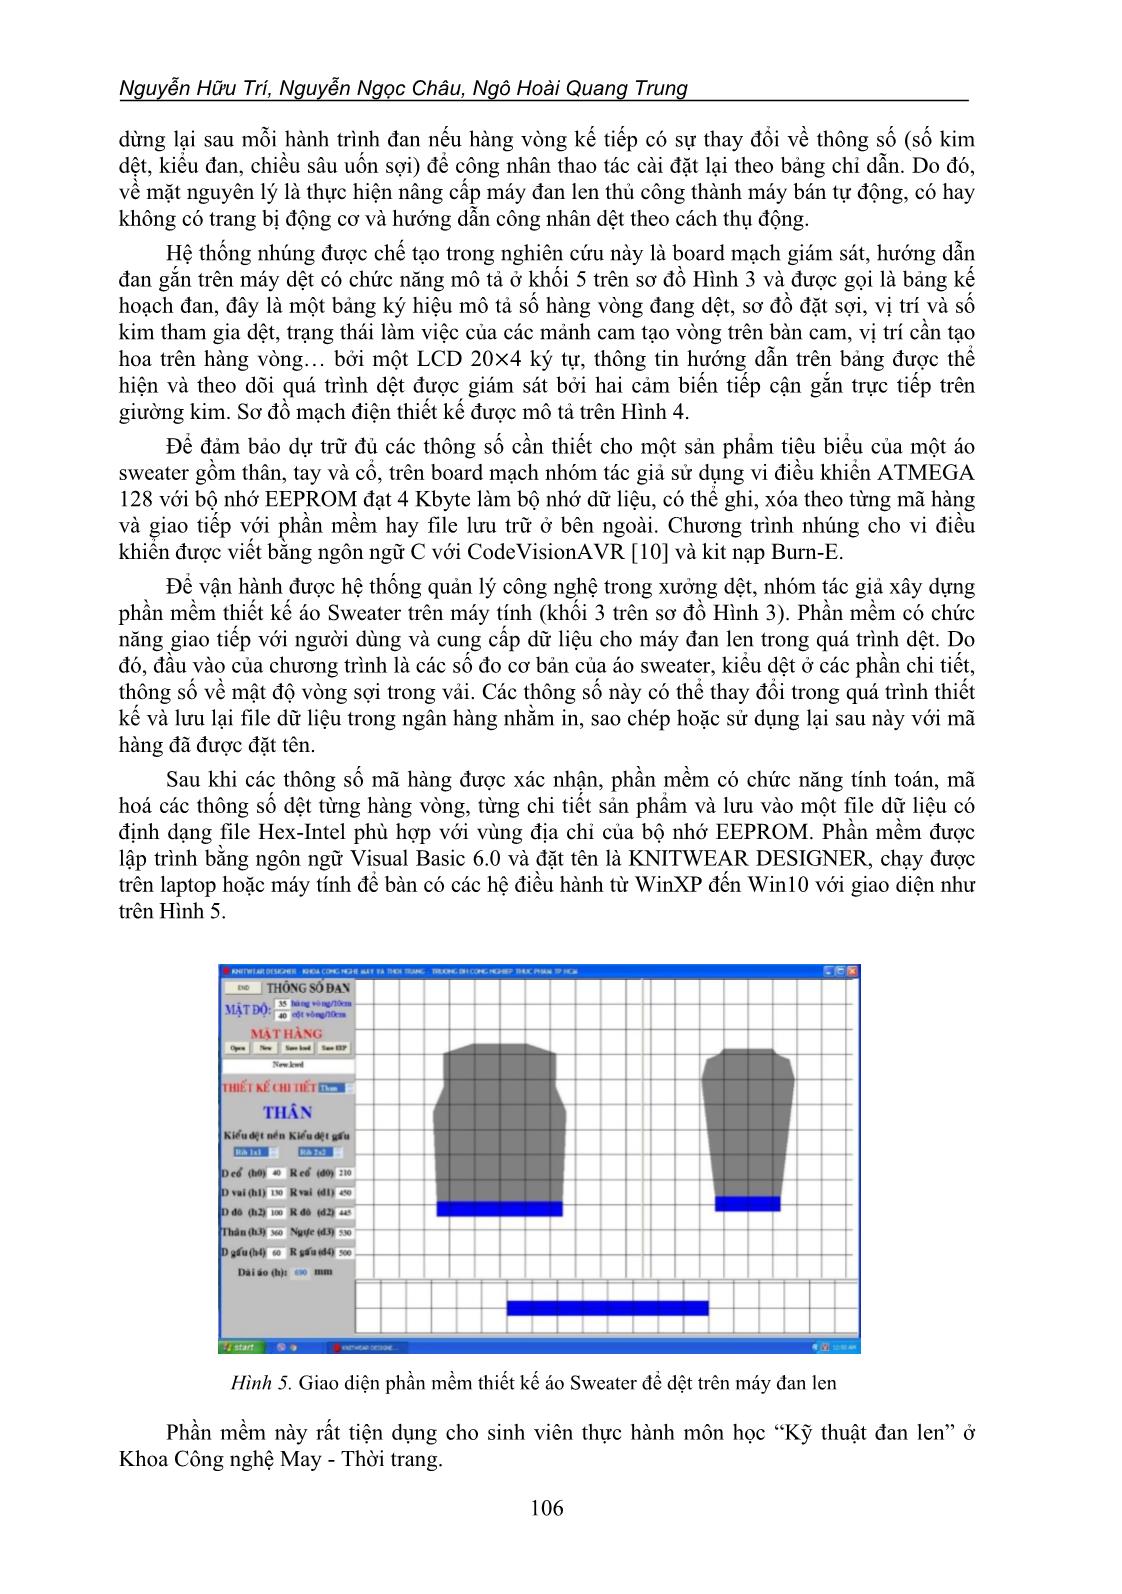 Thiết kế hệ thống nhúng hỗ trợ quá trình công nghệ dệt trên máy đan len phẳng 2 giường kim trang 5